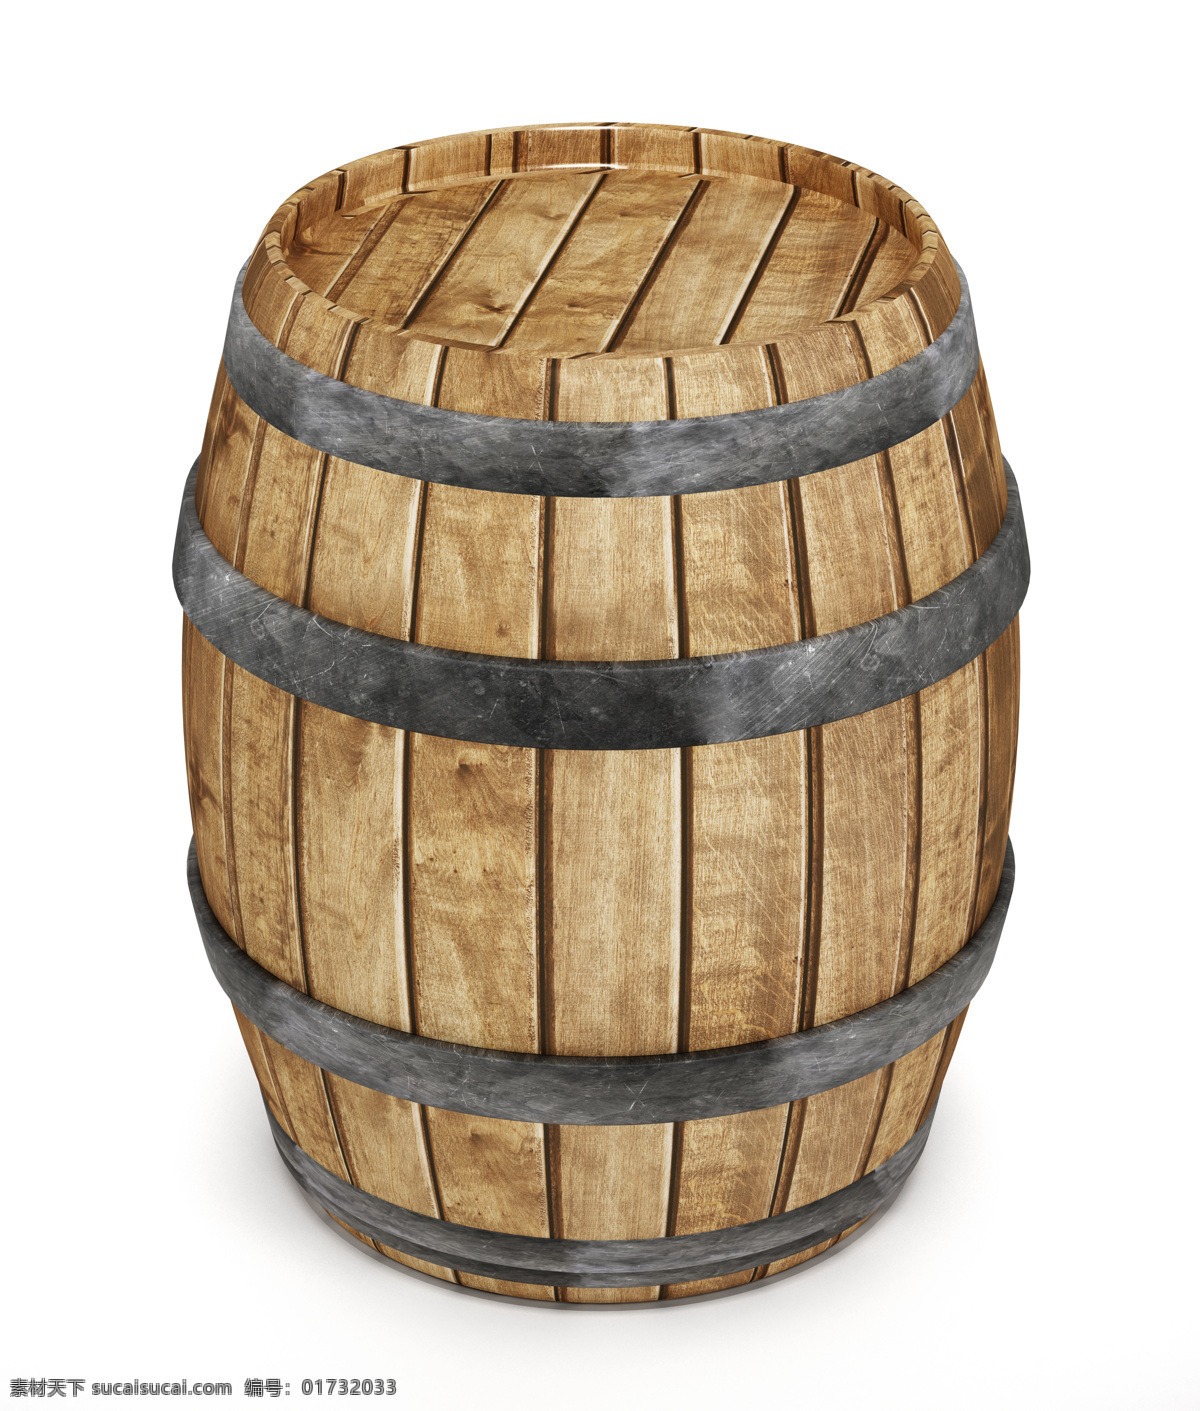 一个木制酒桶 葡萄酒桶 酒桶 木桶 酒水 酒水饮料 其他类别 生活百科 白色